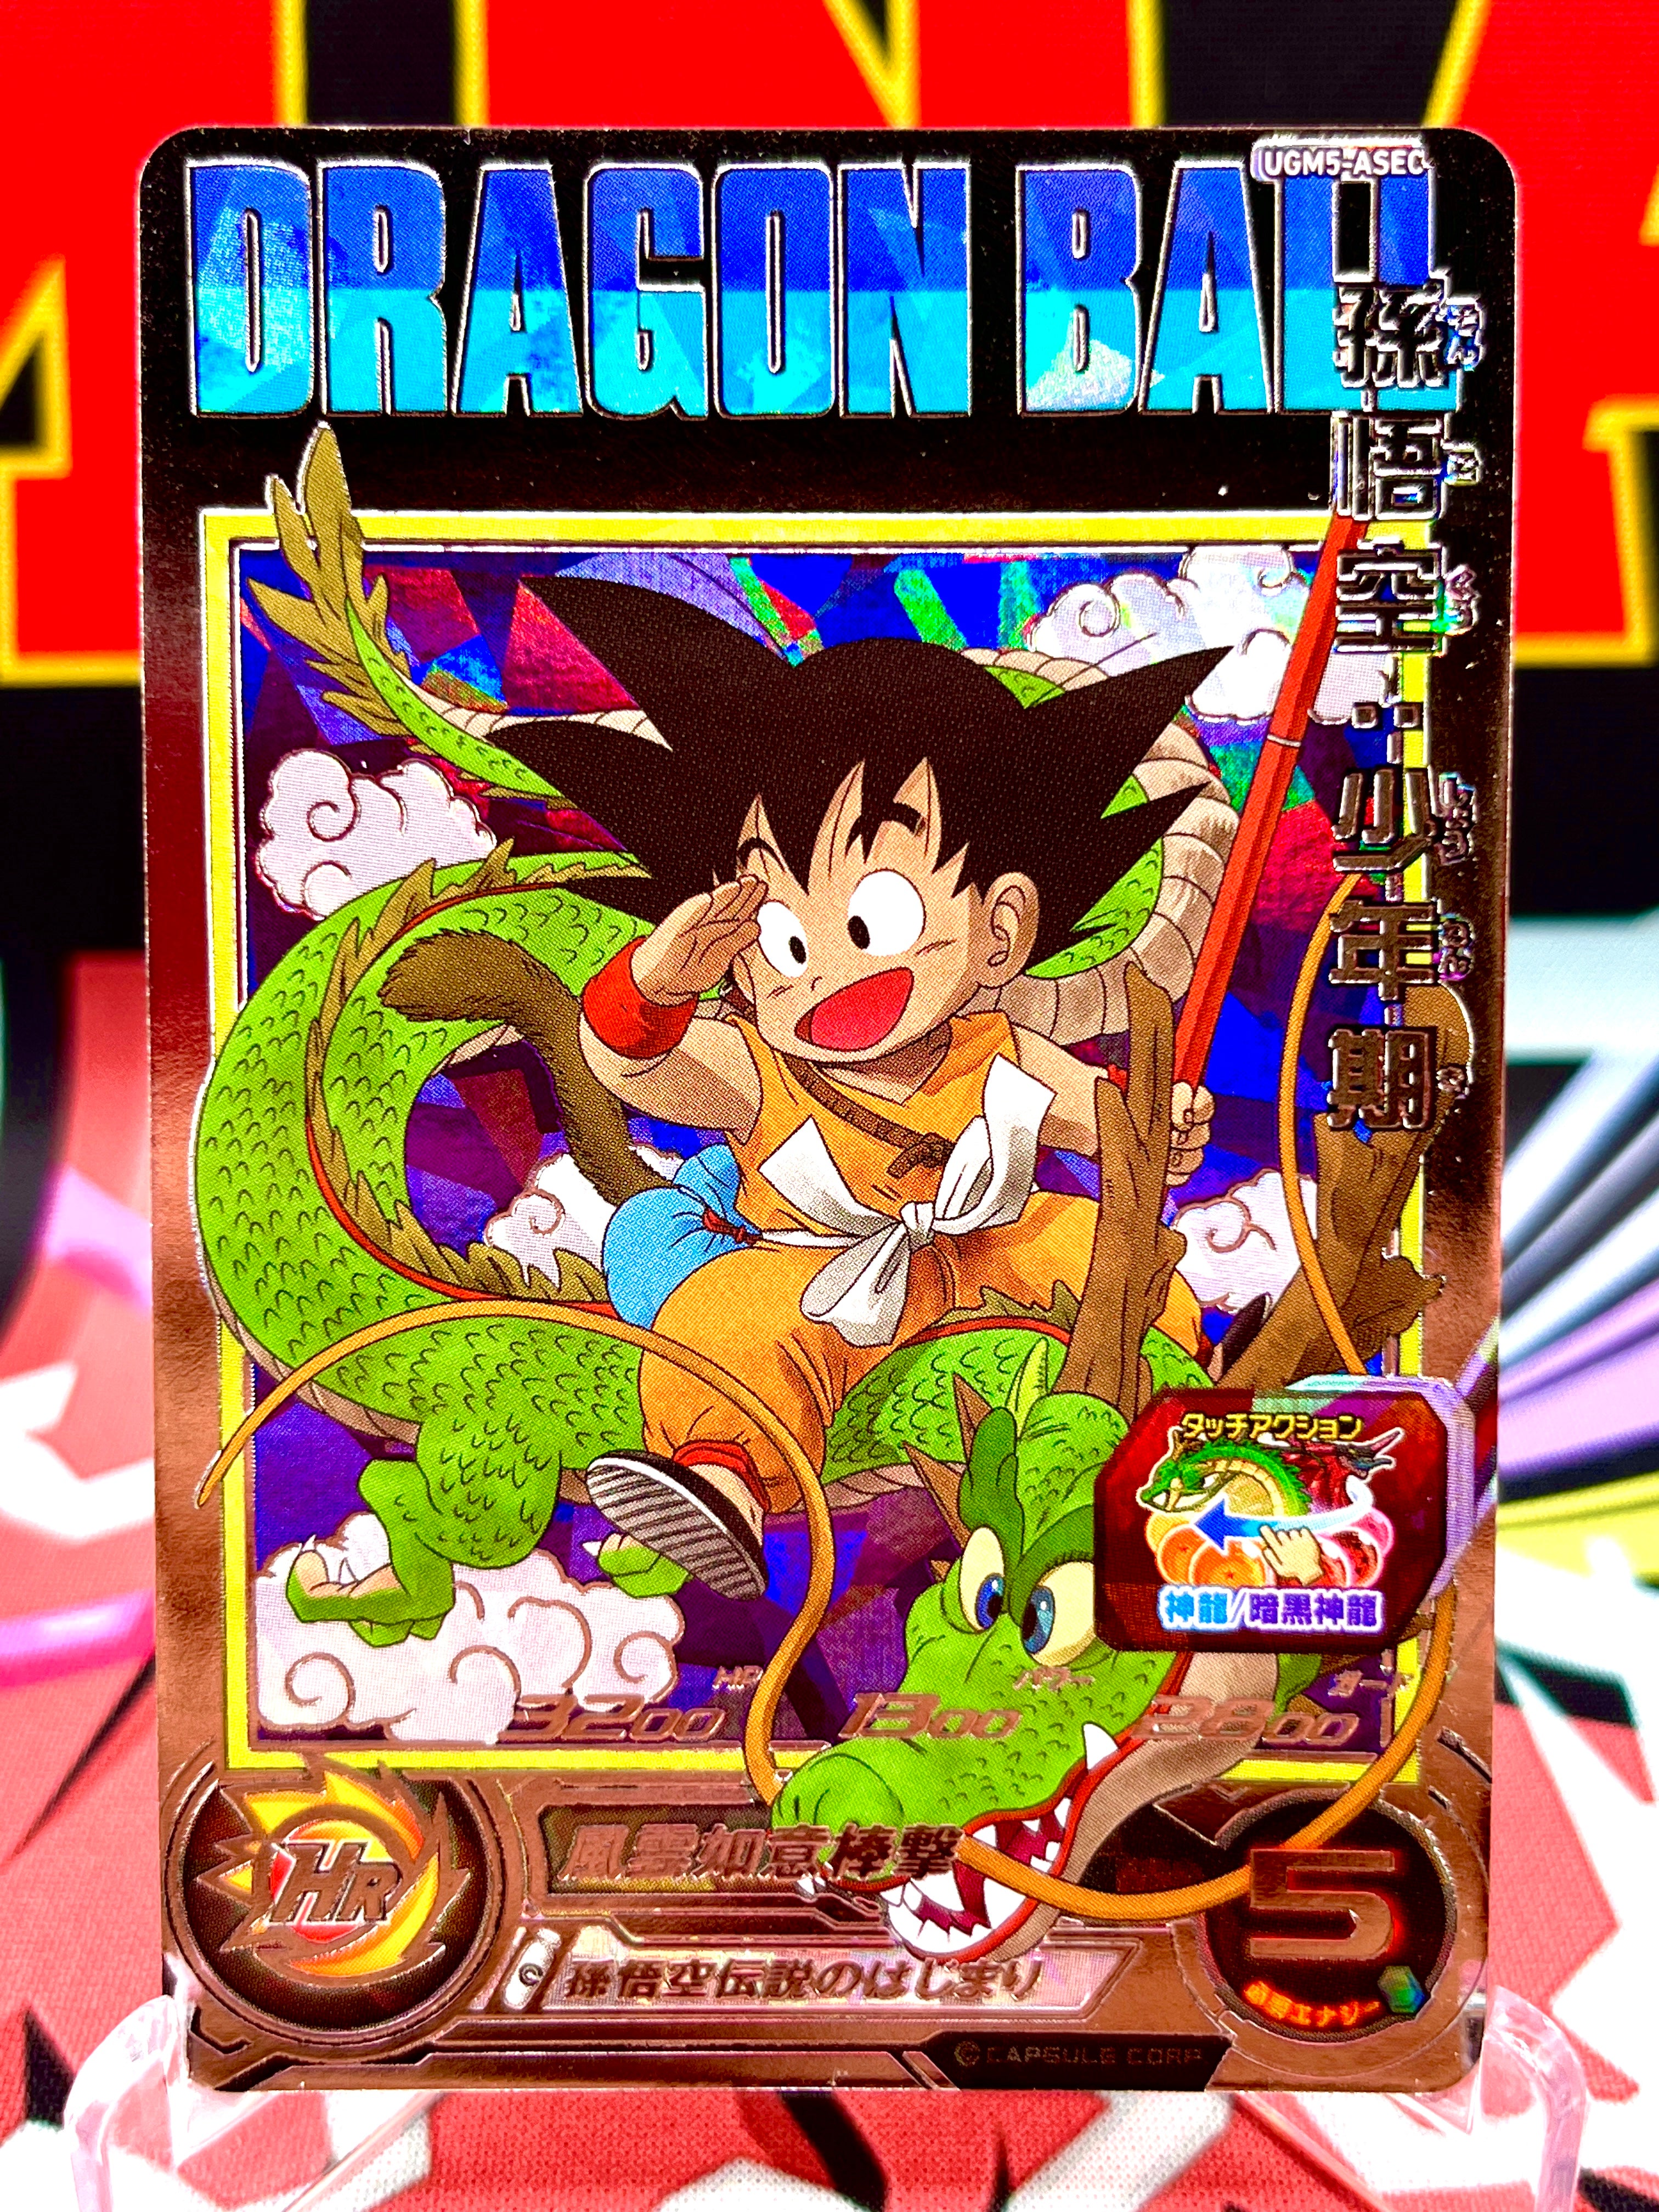 UGM5-ASEC Son Goku: Boyhood (2022)